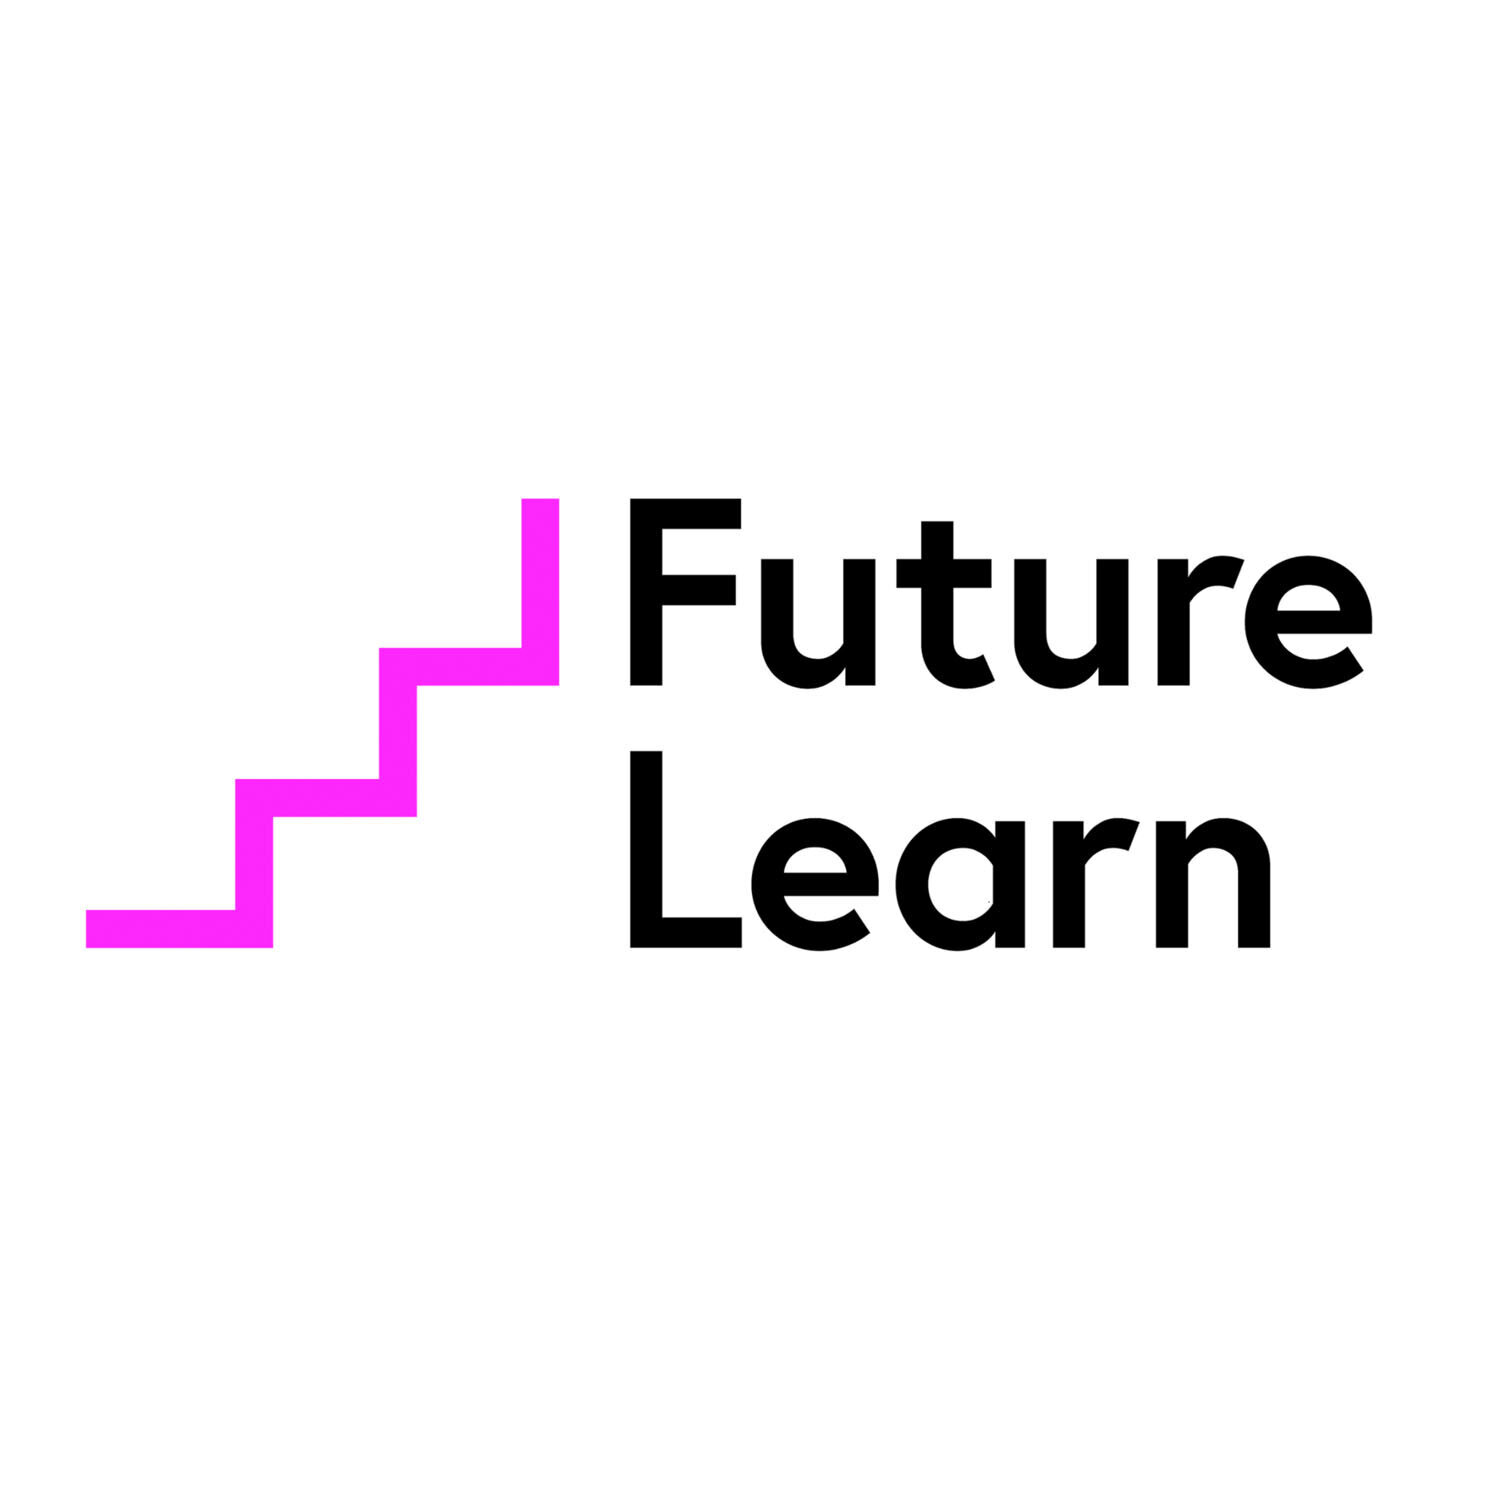 future-learn-logo